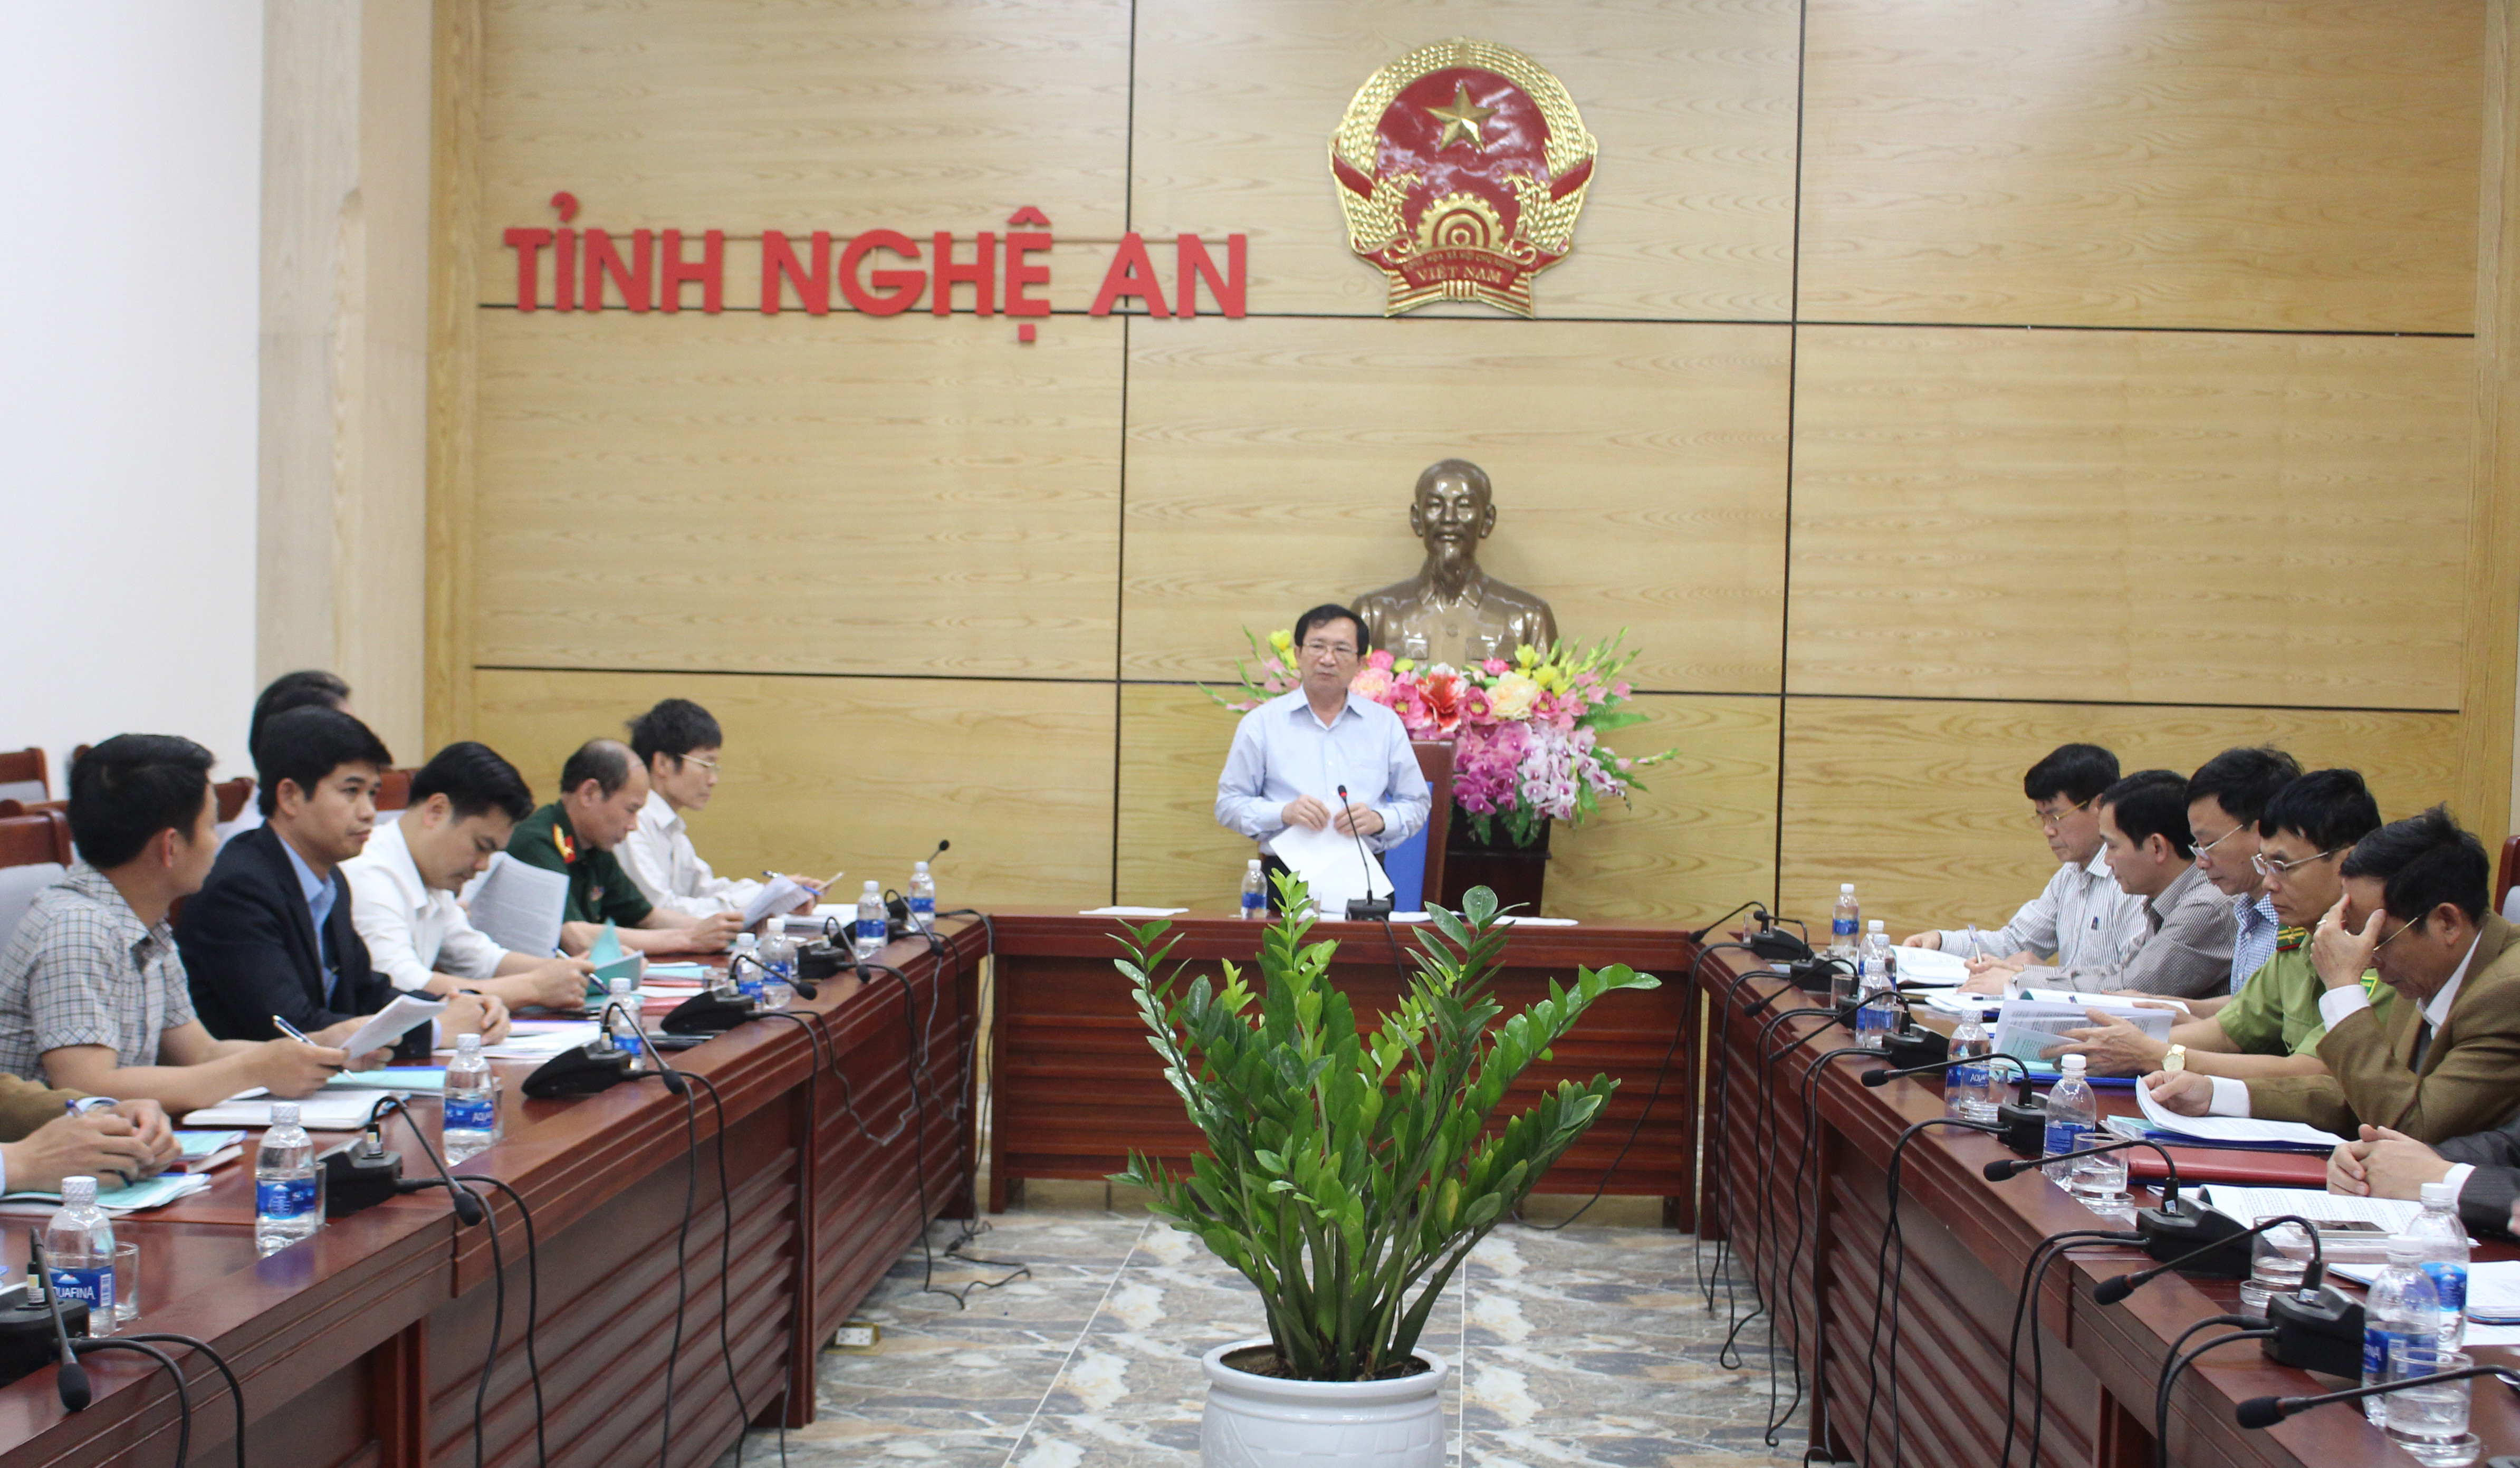 Đồng chí Đinh Viết Hồng, phó chủ tịch UBND tỉnh chủ trì buổi làm việc. Ảnh: Phú Hương